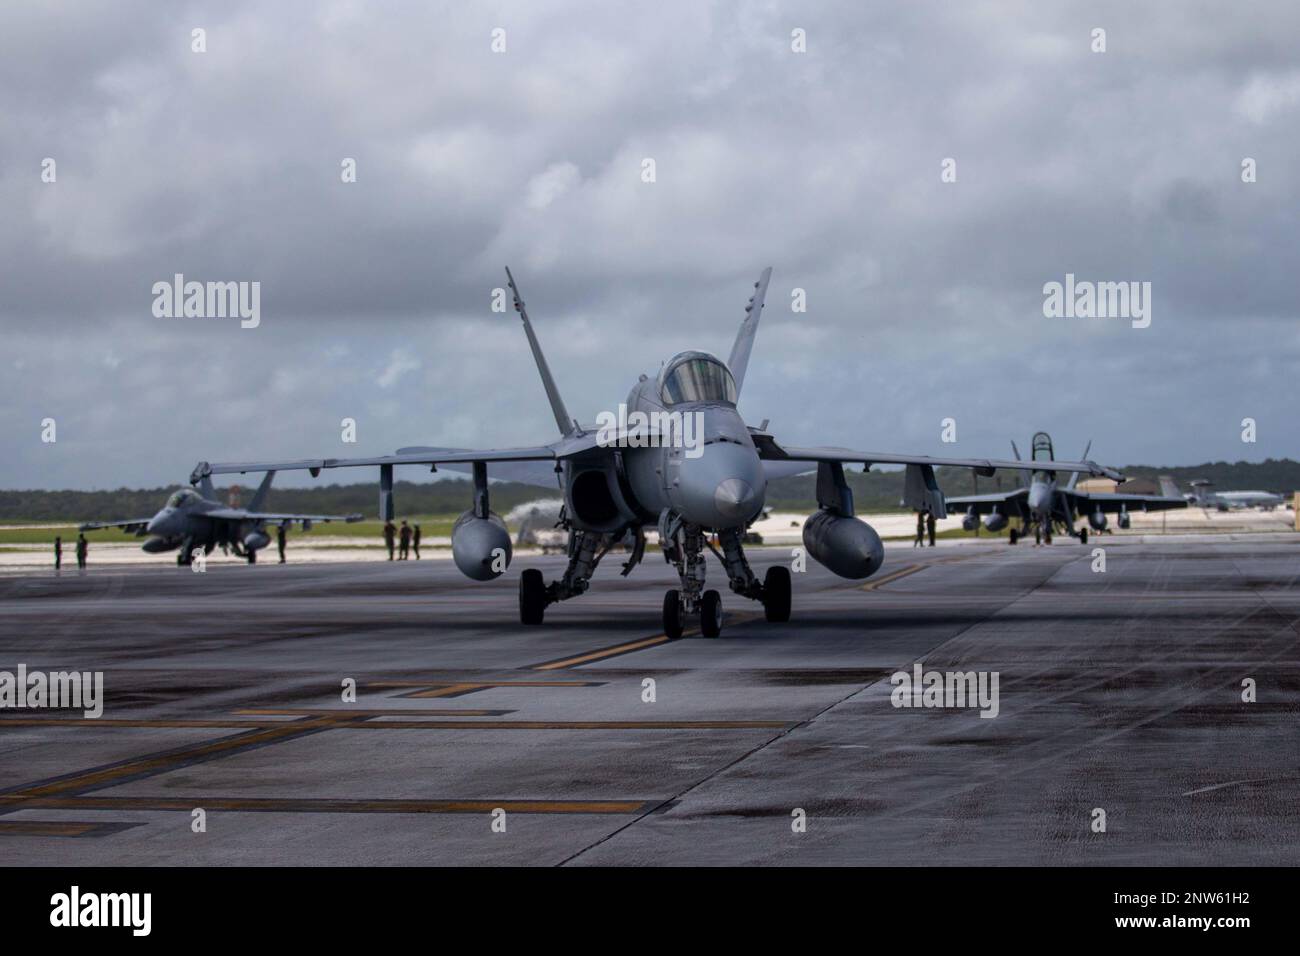 A ÉTATS-UNIS Les navires F/A-18 Hornet du corps maritime avec l'escadron d'attaque de chasseurs marins (VMFA) 312 taxis la piste après le retour à la base aérienne d'Andersen, Guam, le 7 février 2023. Le brigadier général George Rowell IV, commandant adjoint de l'aile 1st Marine Aircraft Wing, a visité le VMFA-312 à Guam pour participer aux opérations de vol et montrer son soutien pendant l'exercice COPE North 2023. Banque D'Images